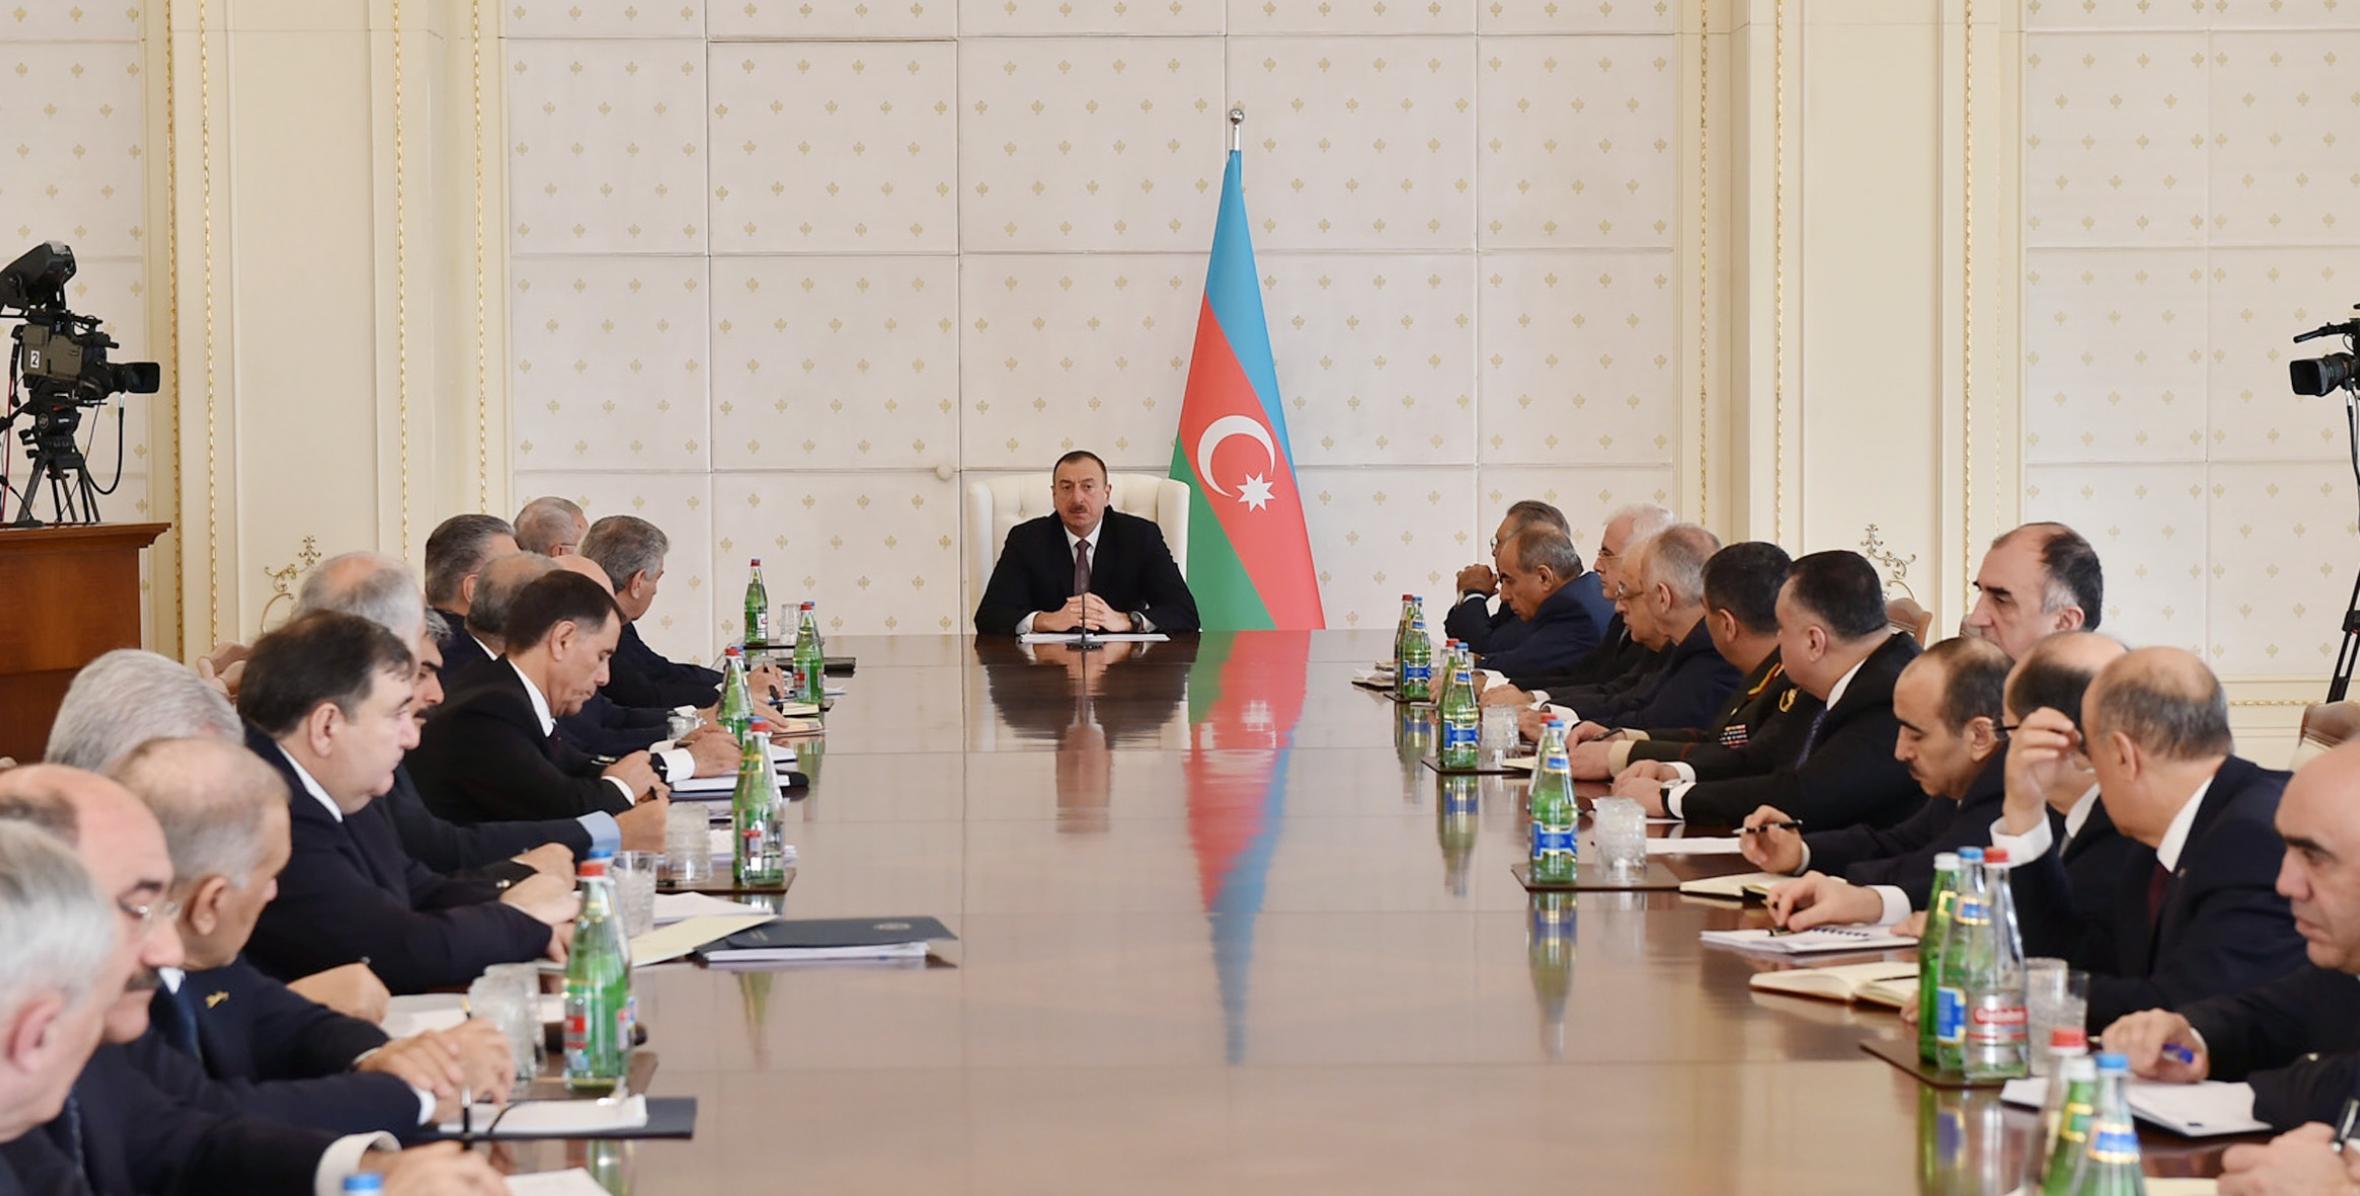 Под председательством Ильхама Алиева состоялось заседание Кабинета Министров, посвященное итогам социально-экономического развития в первом квартале 2015 года и предстоящим задачам